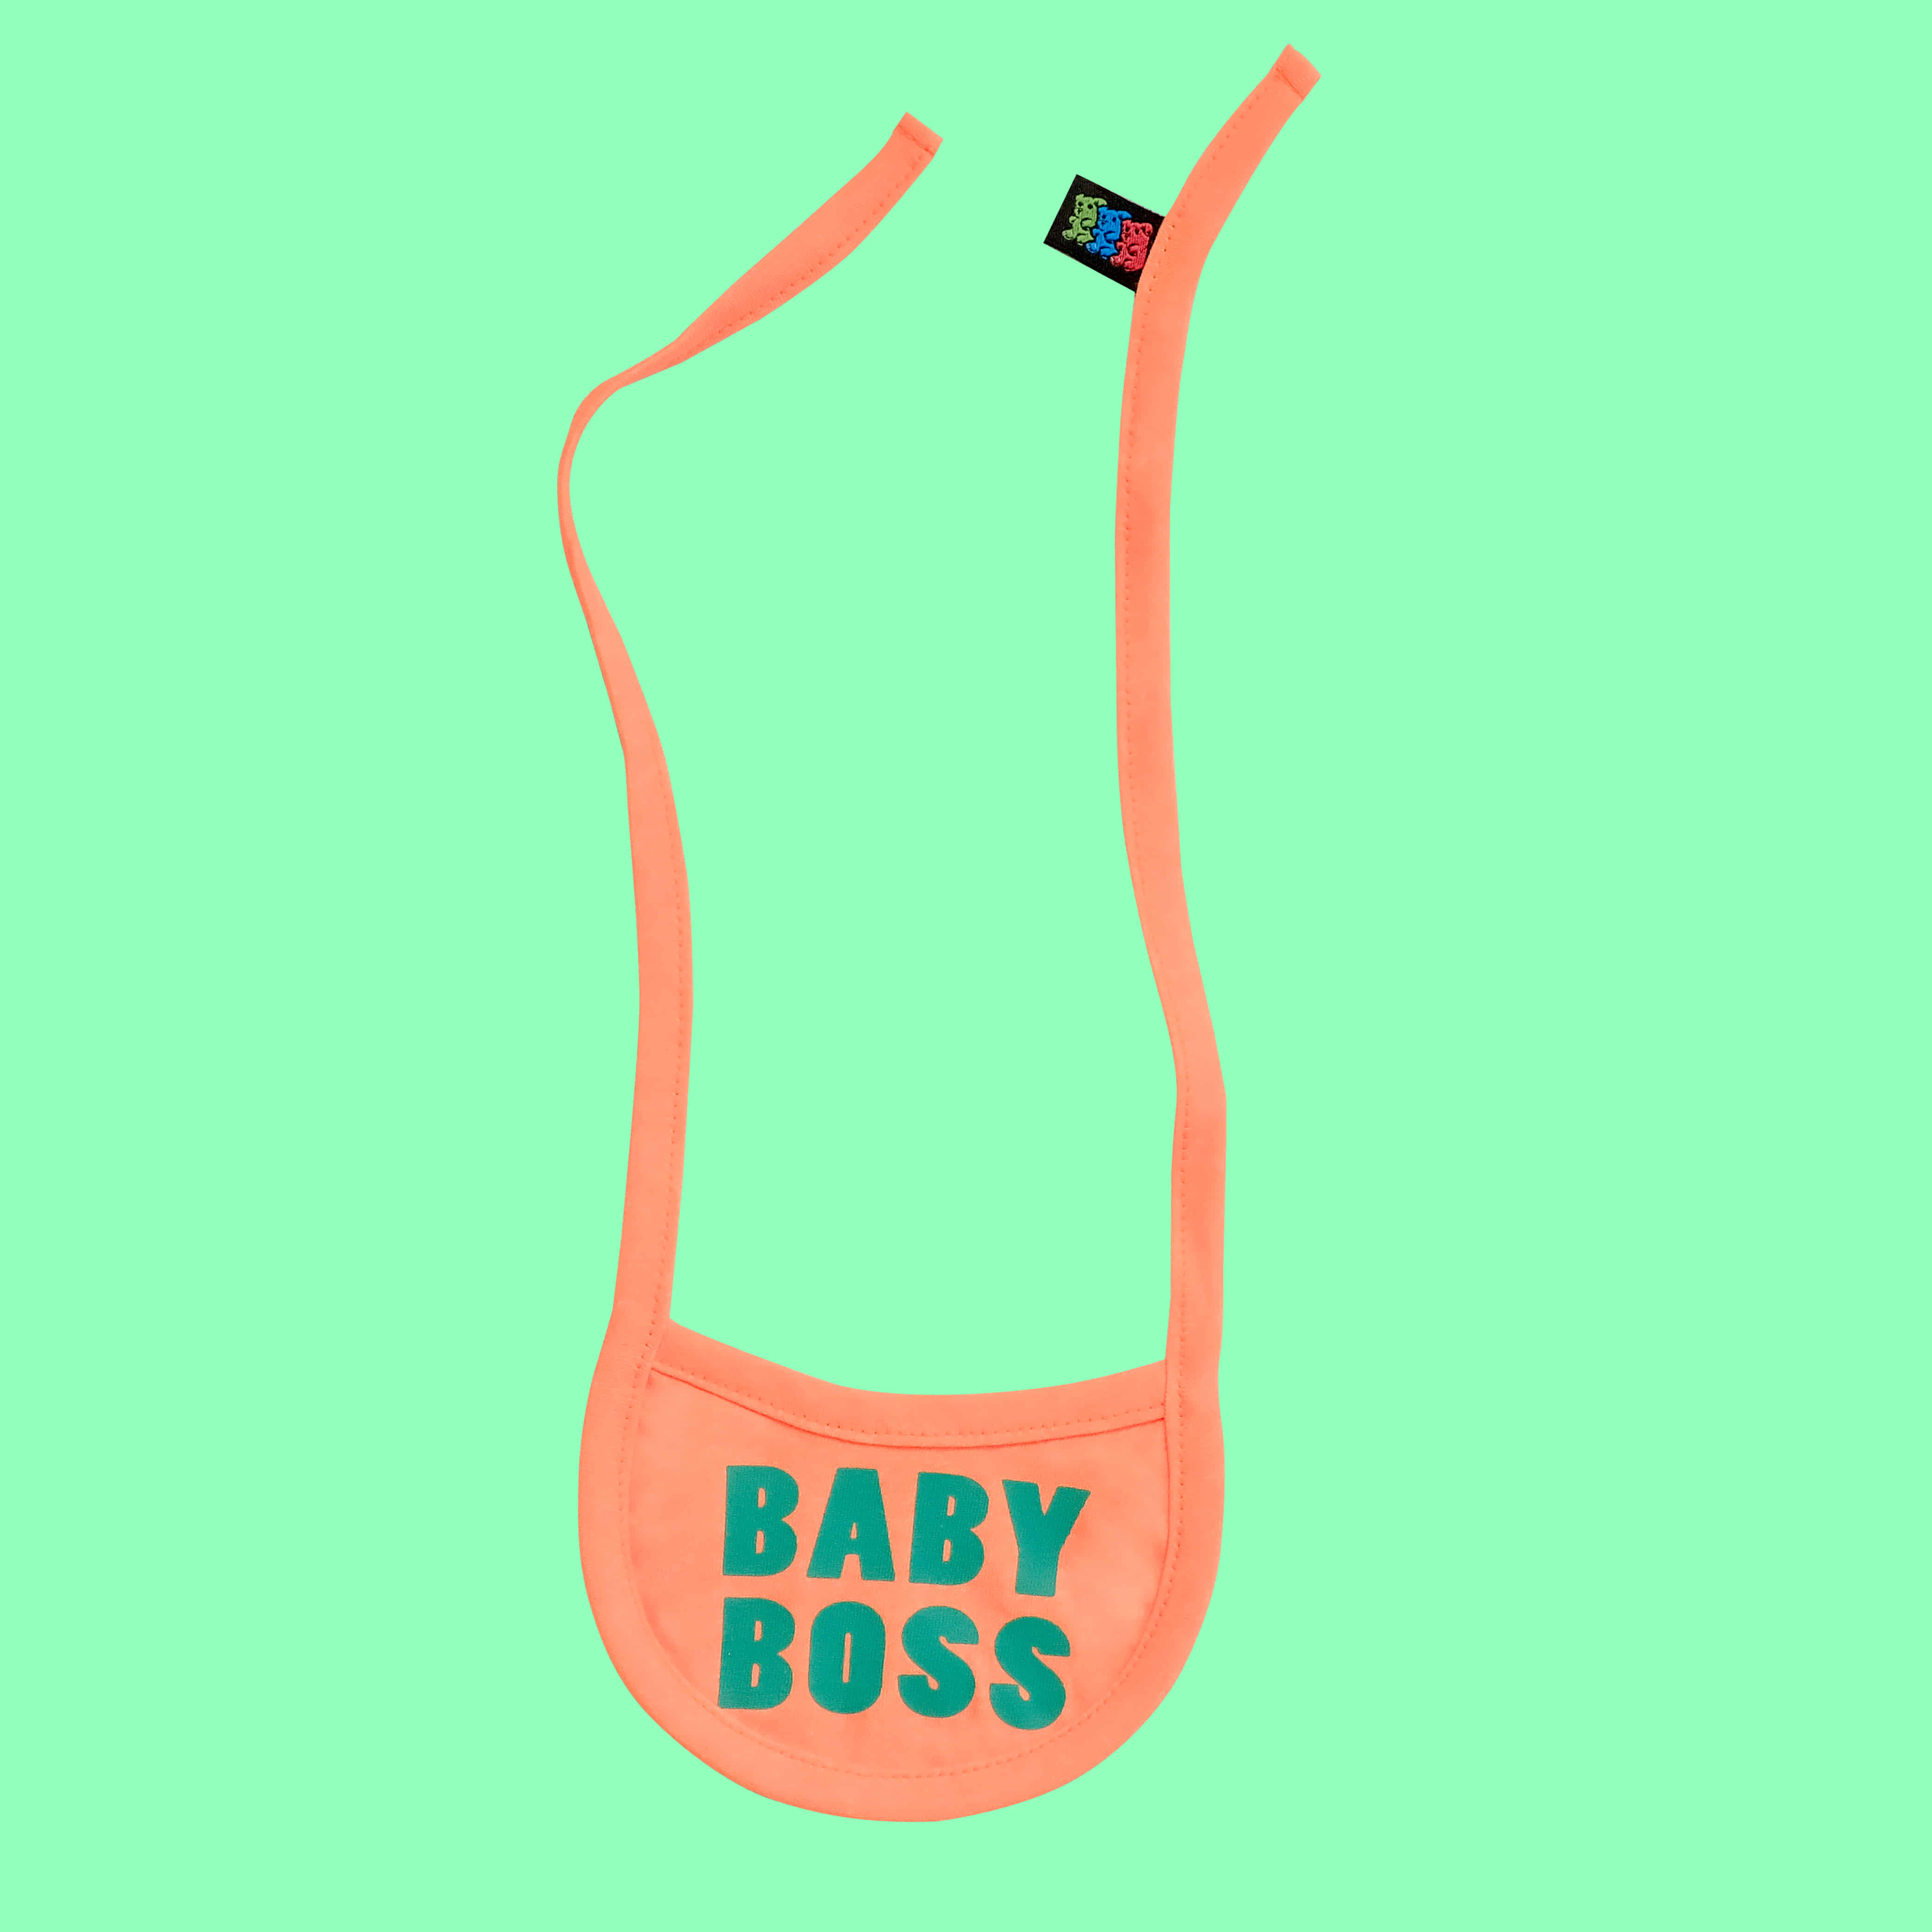 Baby boss bib